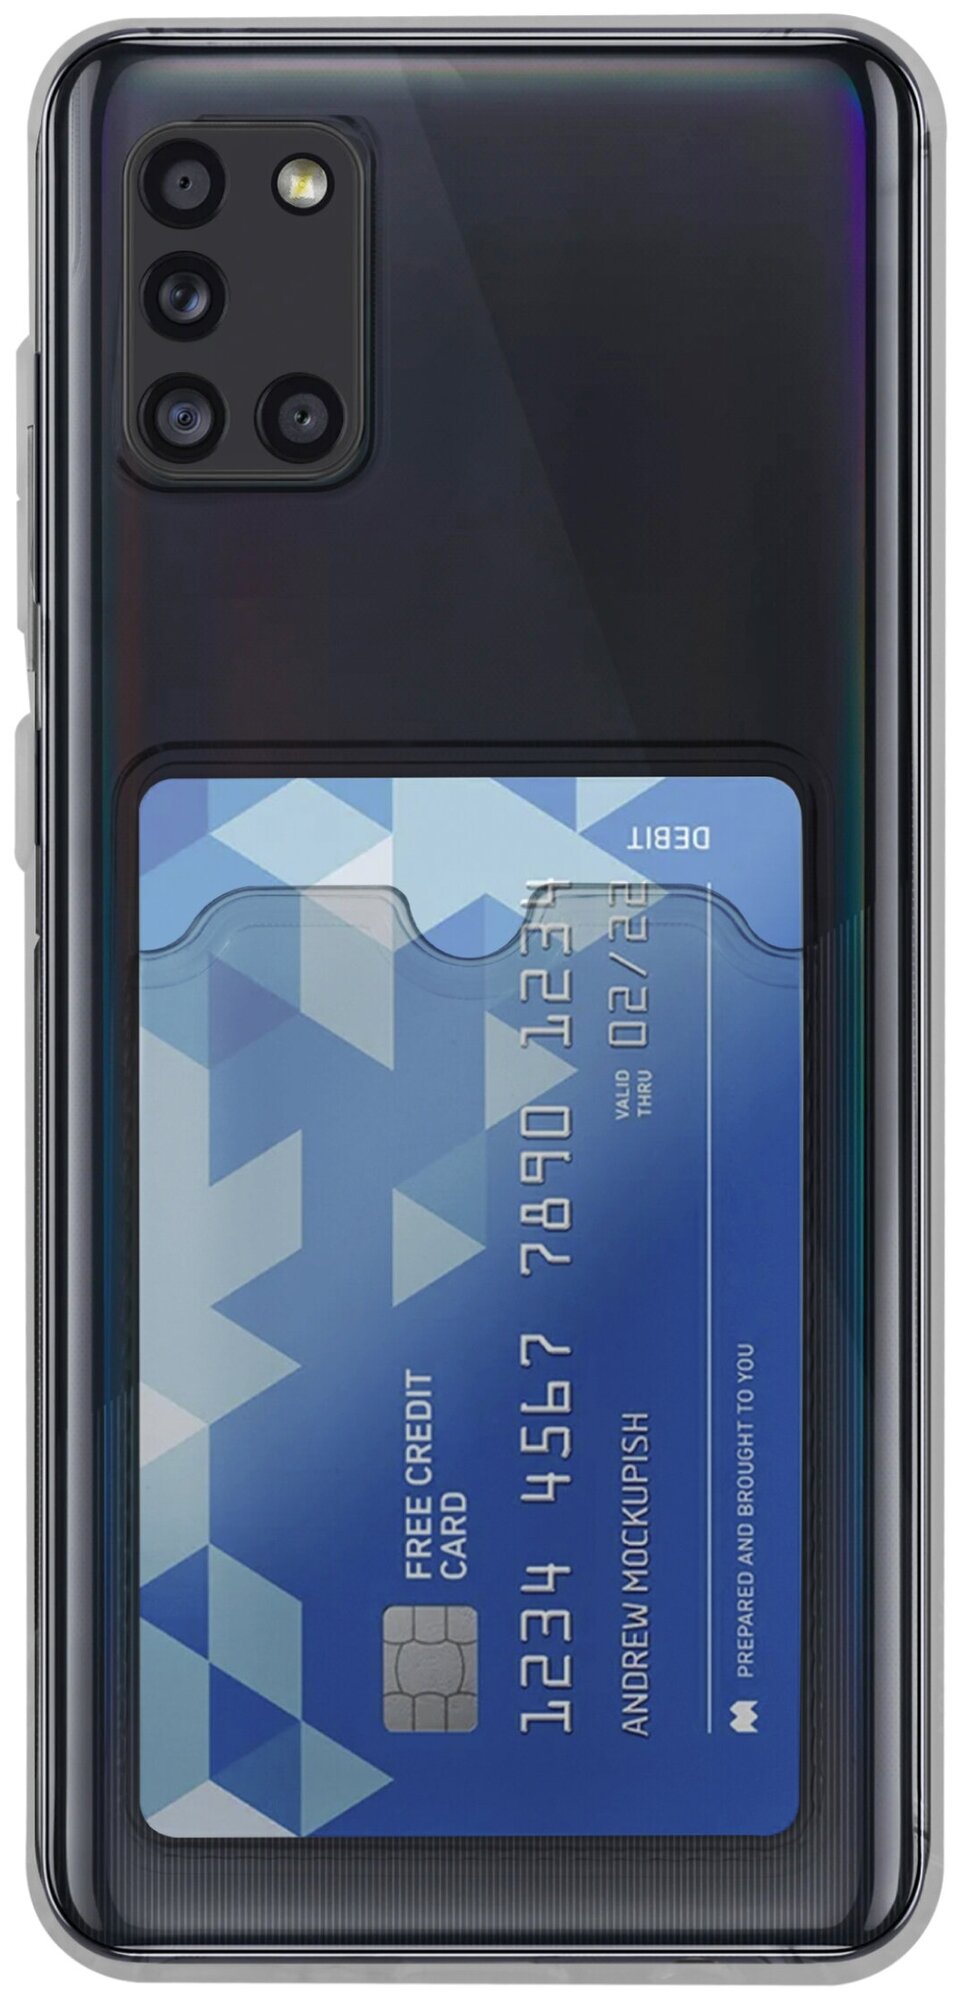 Защитный силиконовый чехол с картхолдером на телефон Samsung Galaxy A51 / Кейс с отделением для пластиковых банковских карт для смартфона Самсунг Галакси А51 / Черный